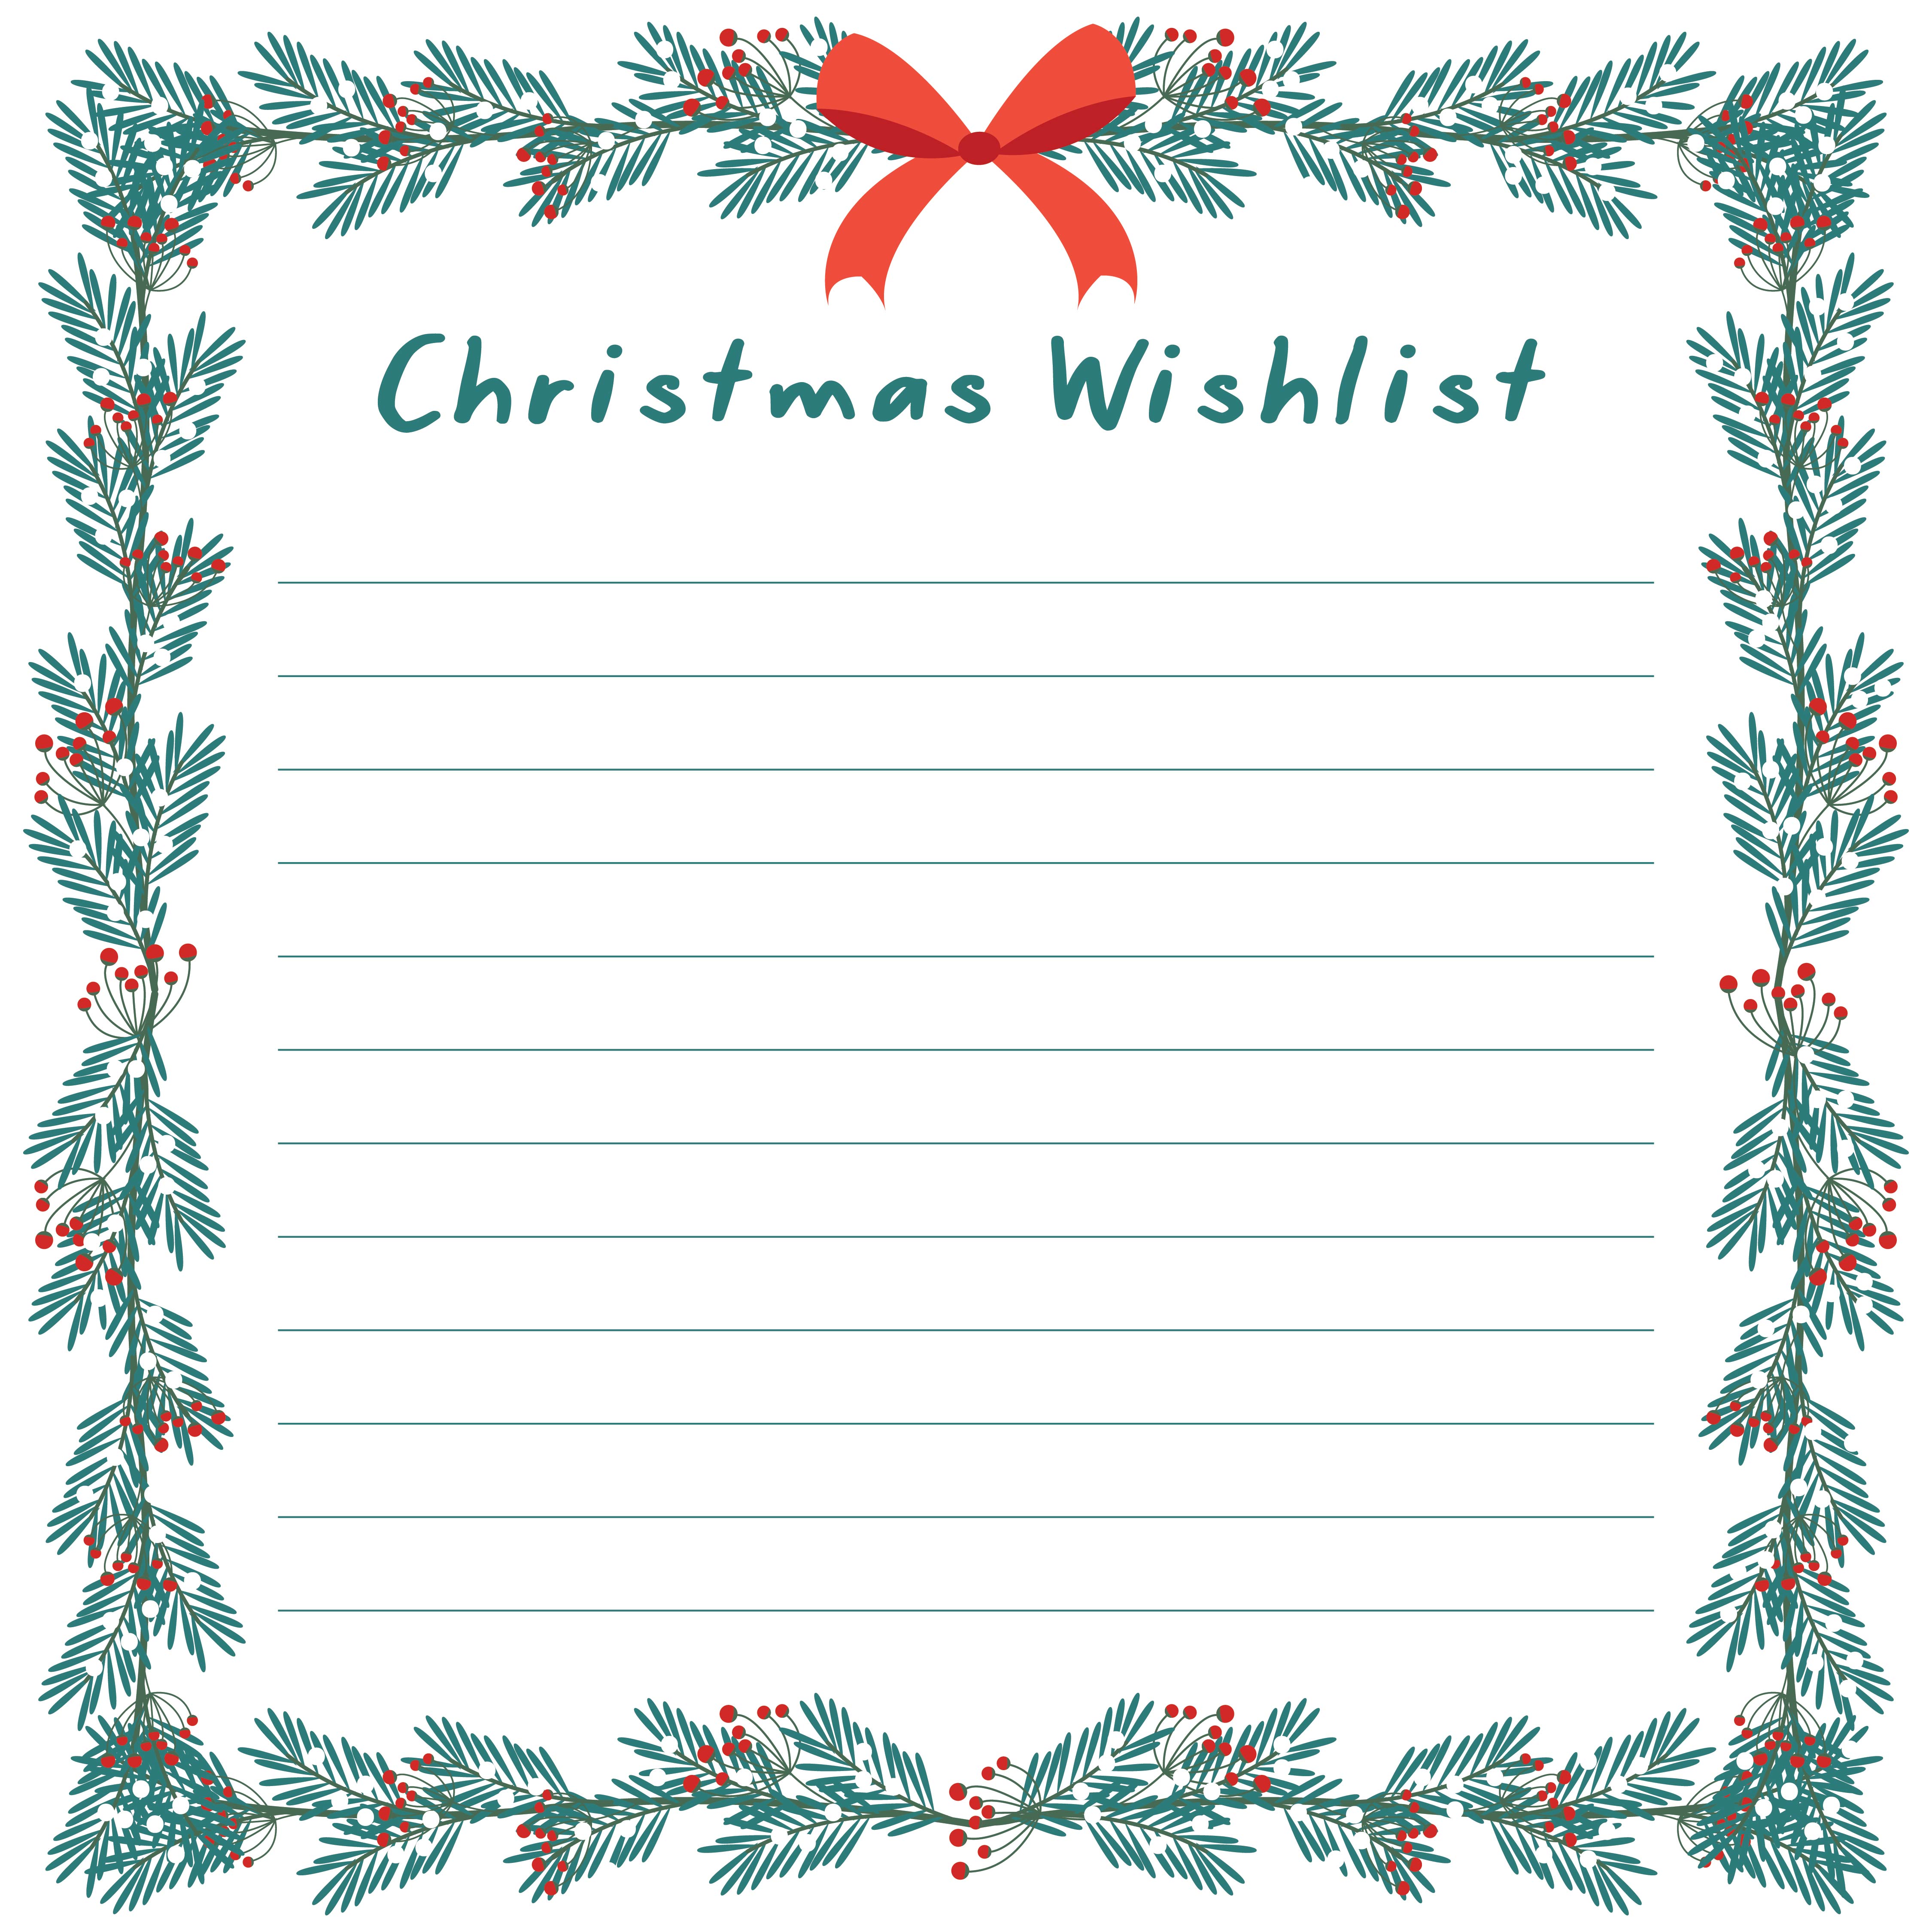 Christmas wish list free printable